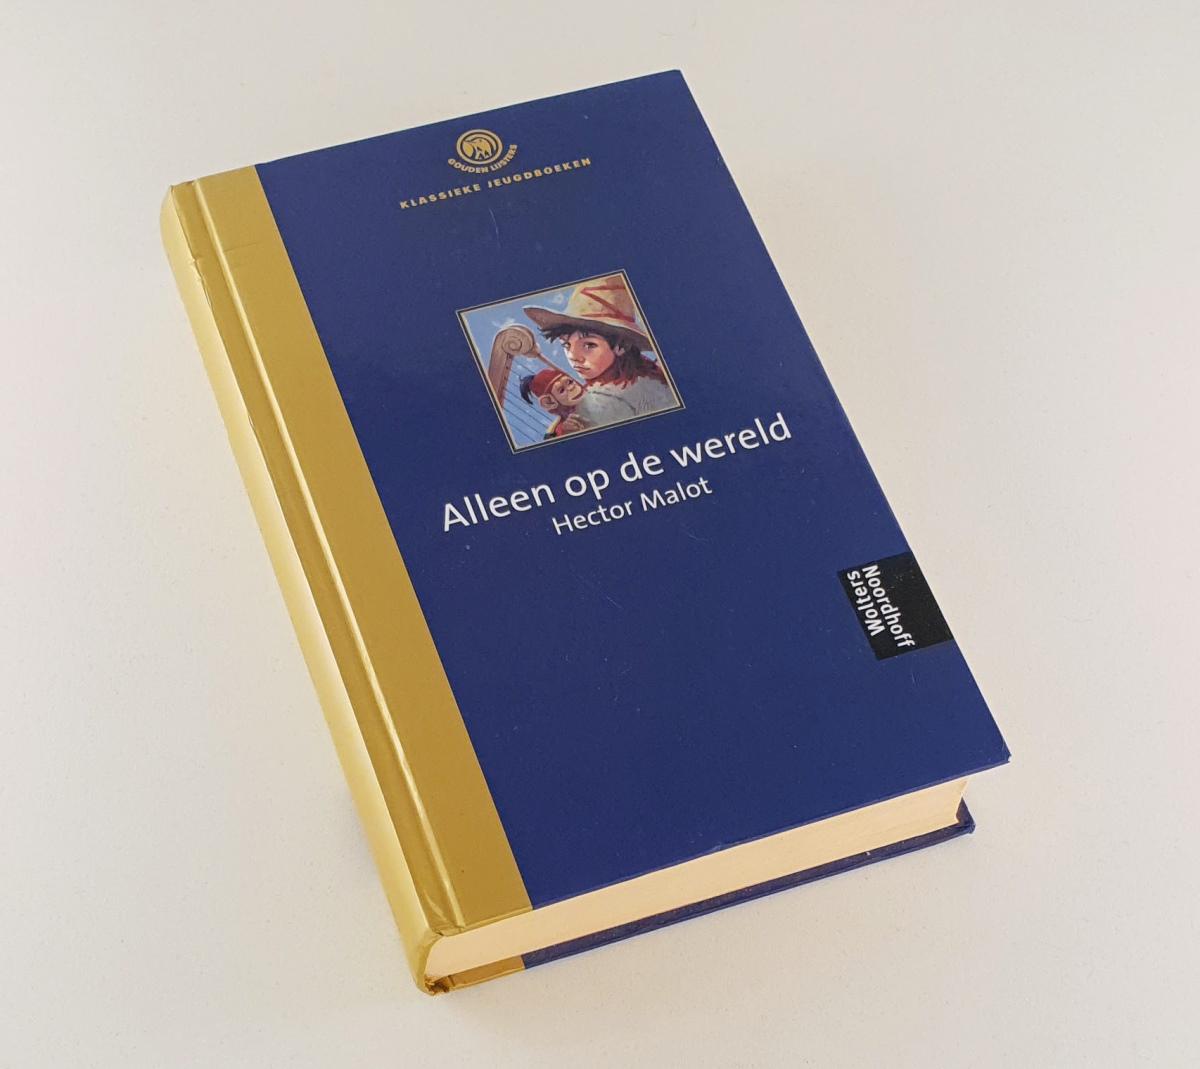 Malot, Hector - Alleen op de wereld / Gouden lijsters klassieke jeugdboeken